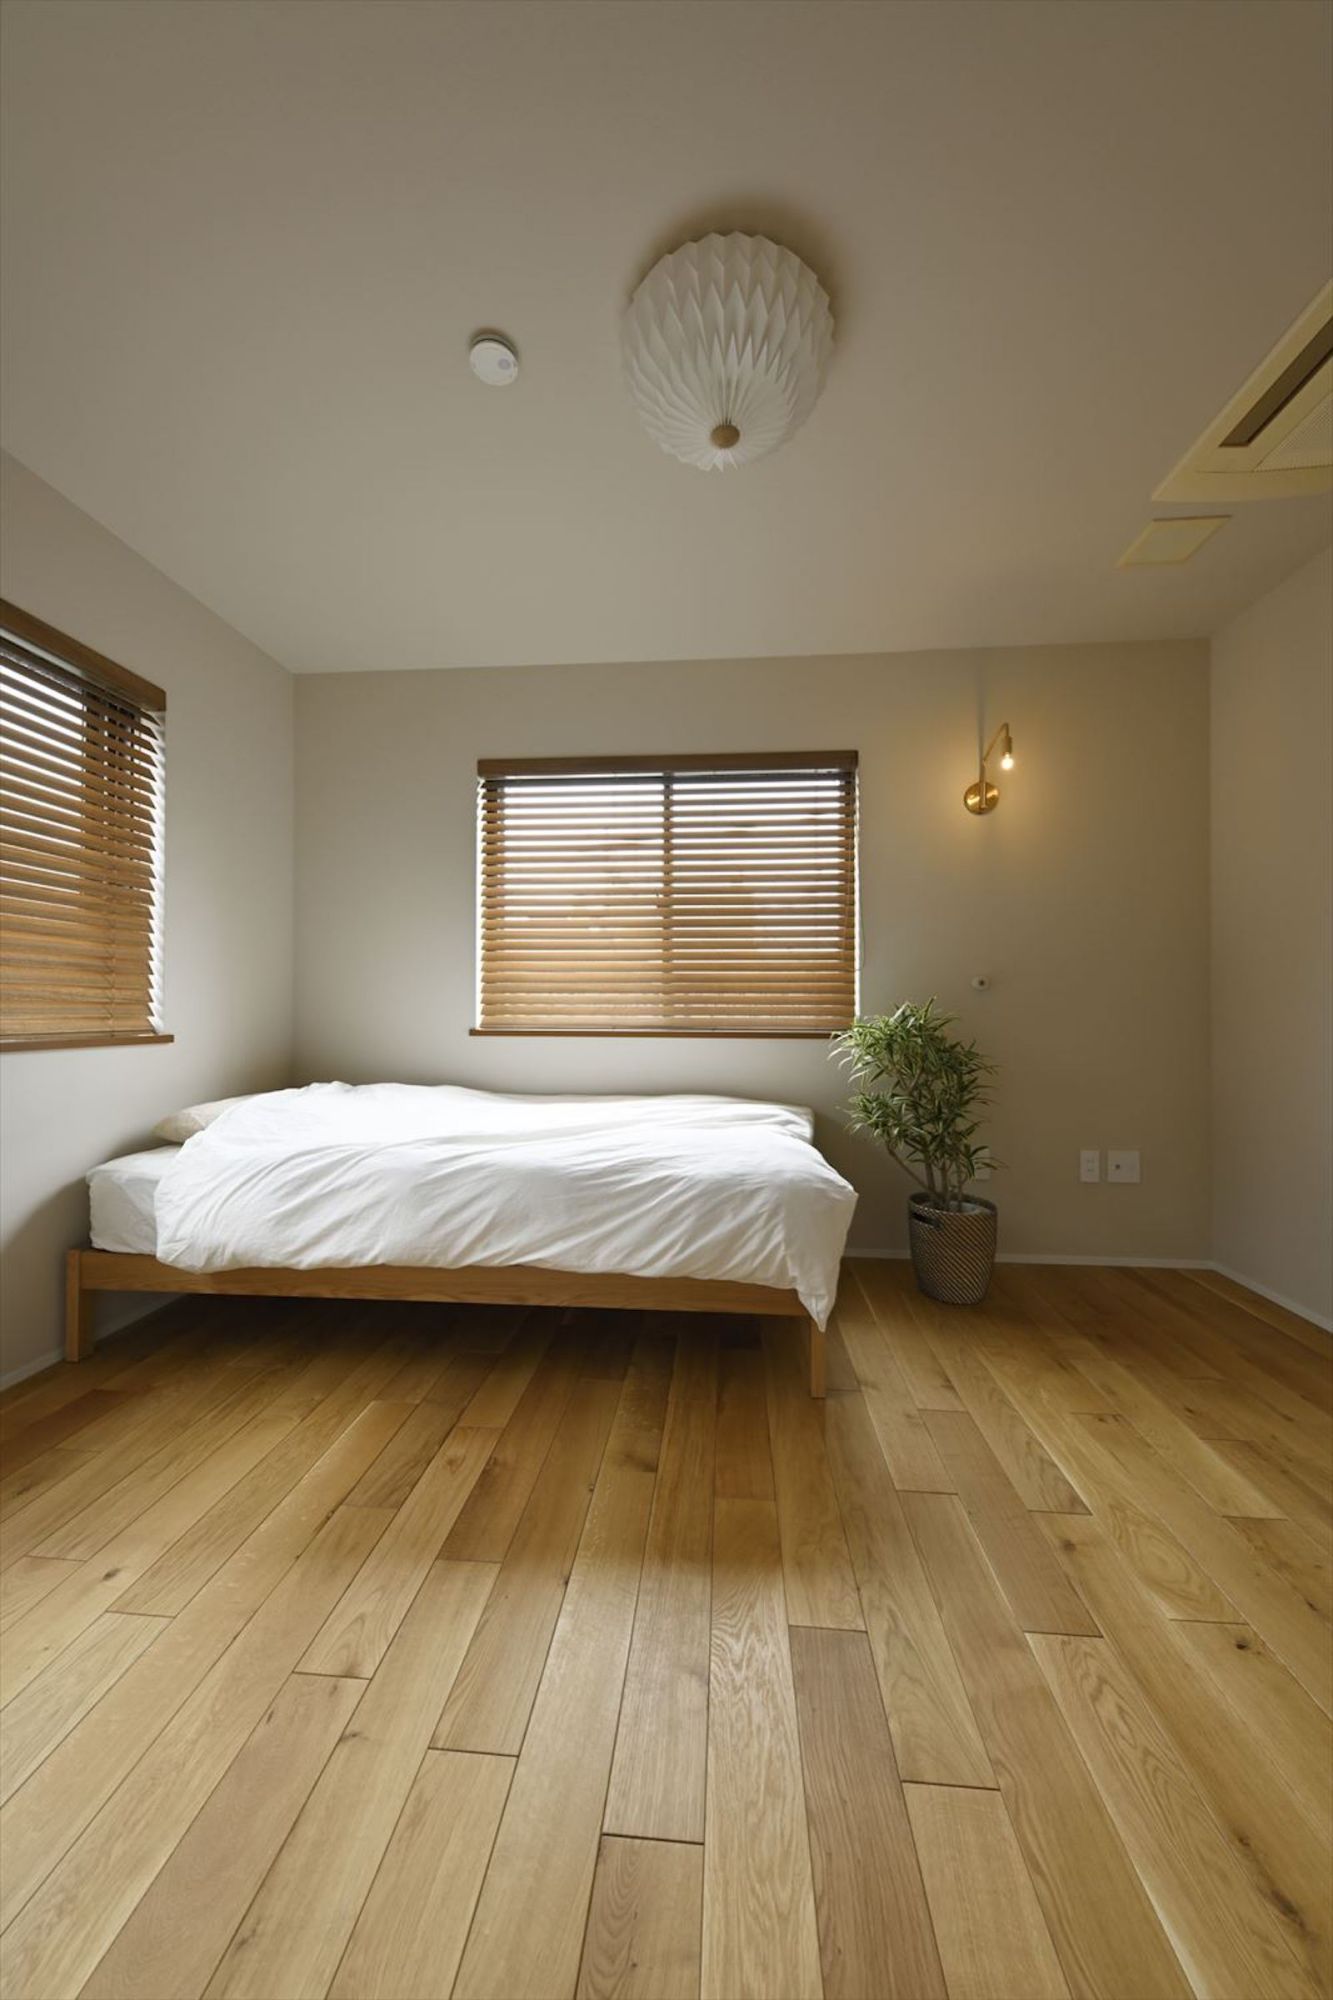 やさしい雰囲気の寝室には真鍮をあわせて上品さをプラス